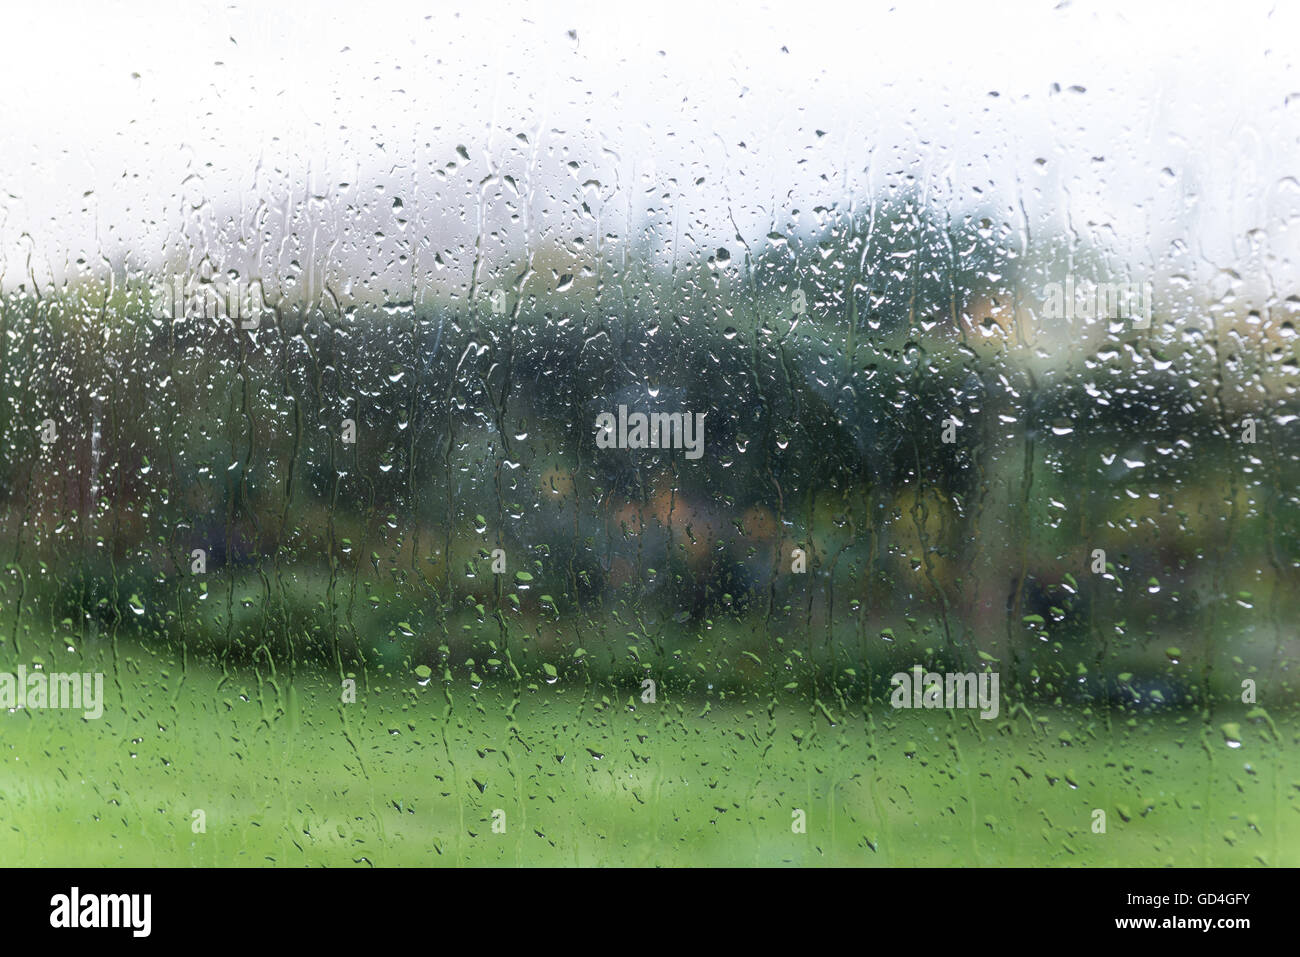 Raindrops on window Stock Photo